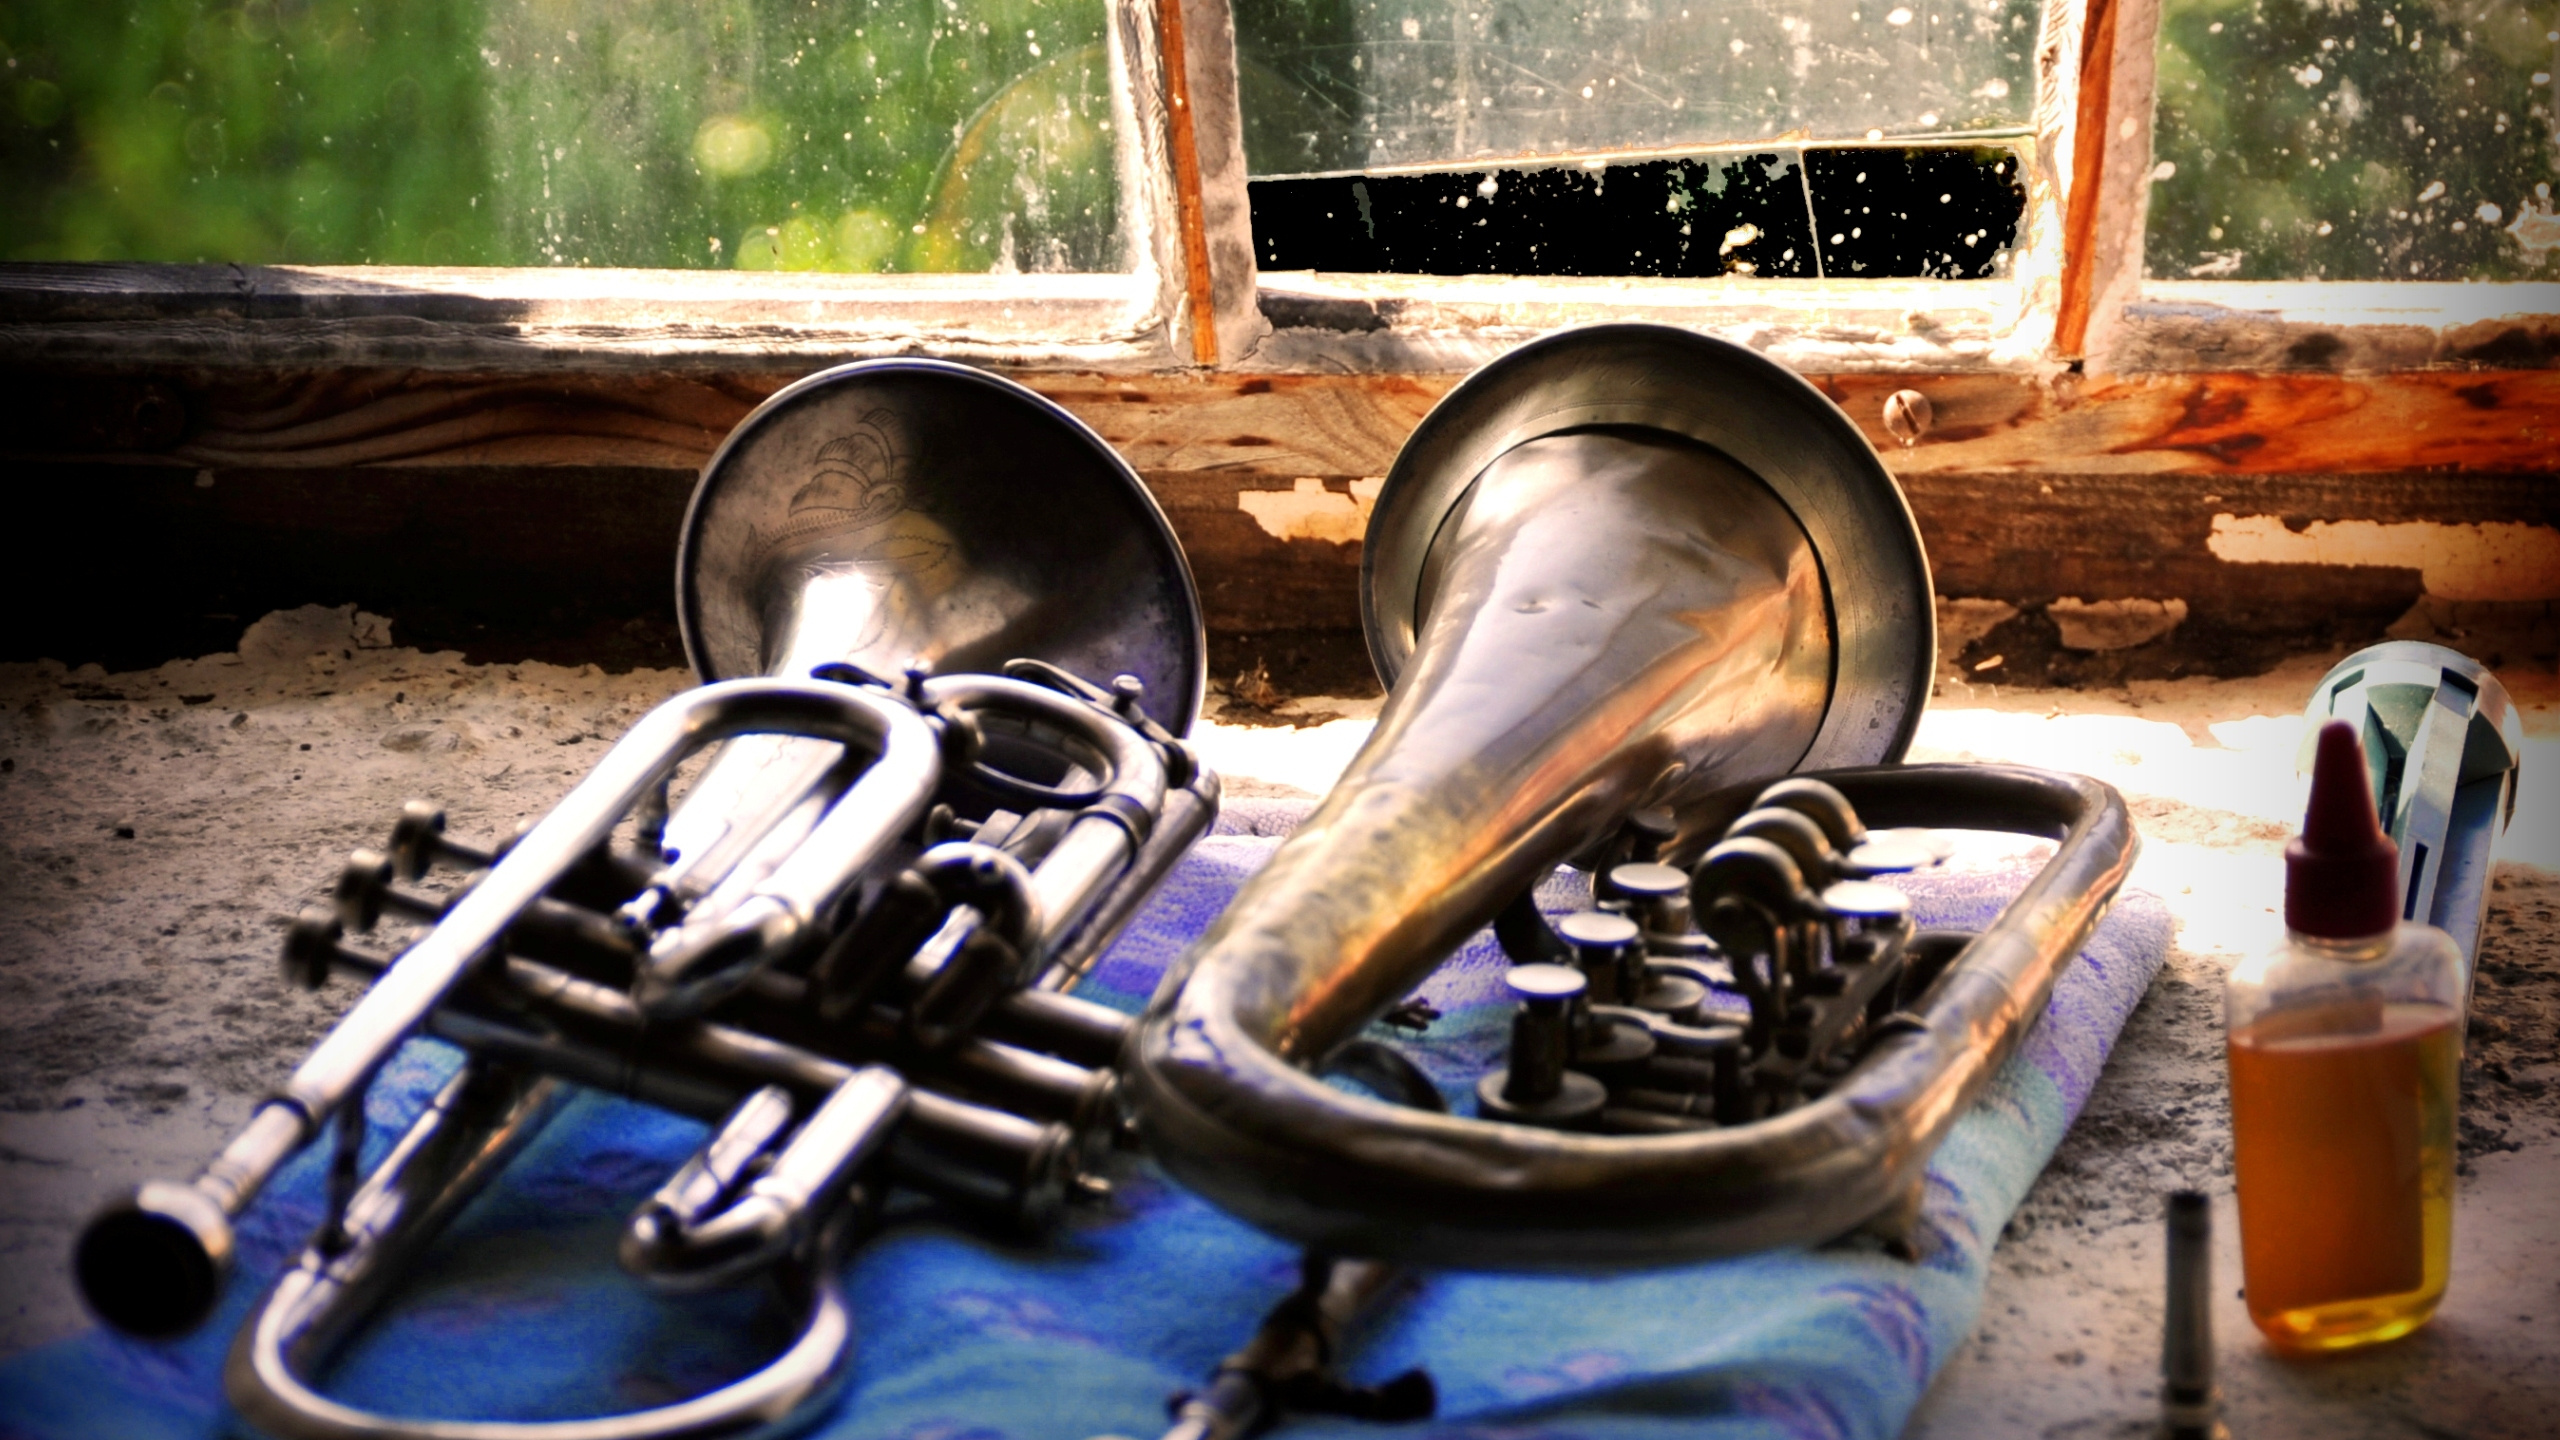 Euphonium, Trompette, Instrument de Cuivre, Mellophone, Instrument à Vent. Wallpaper in 2560x1440 Resolution